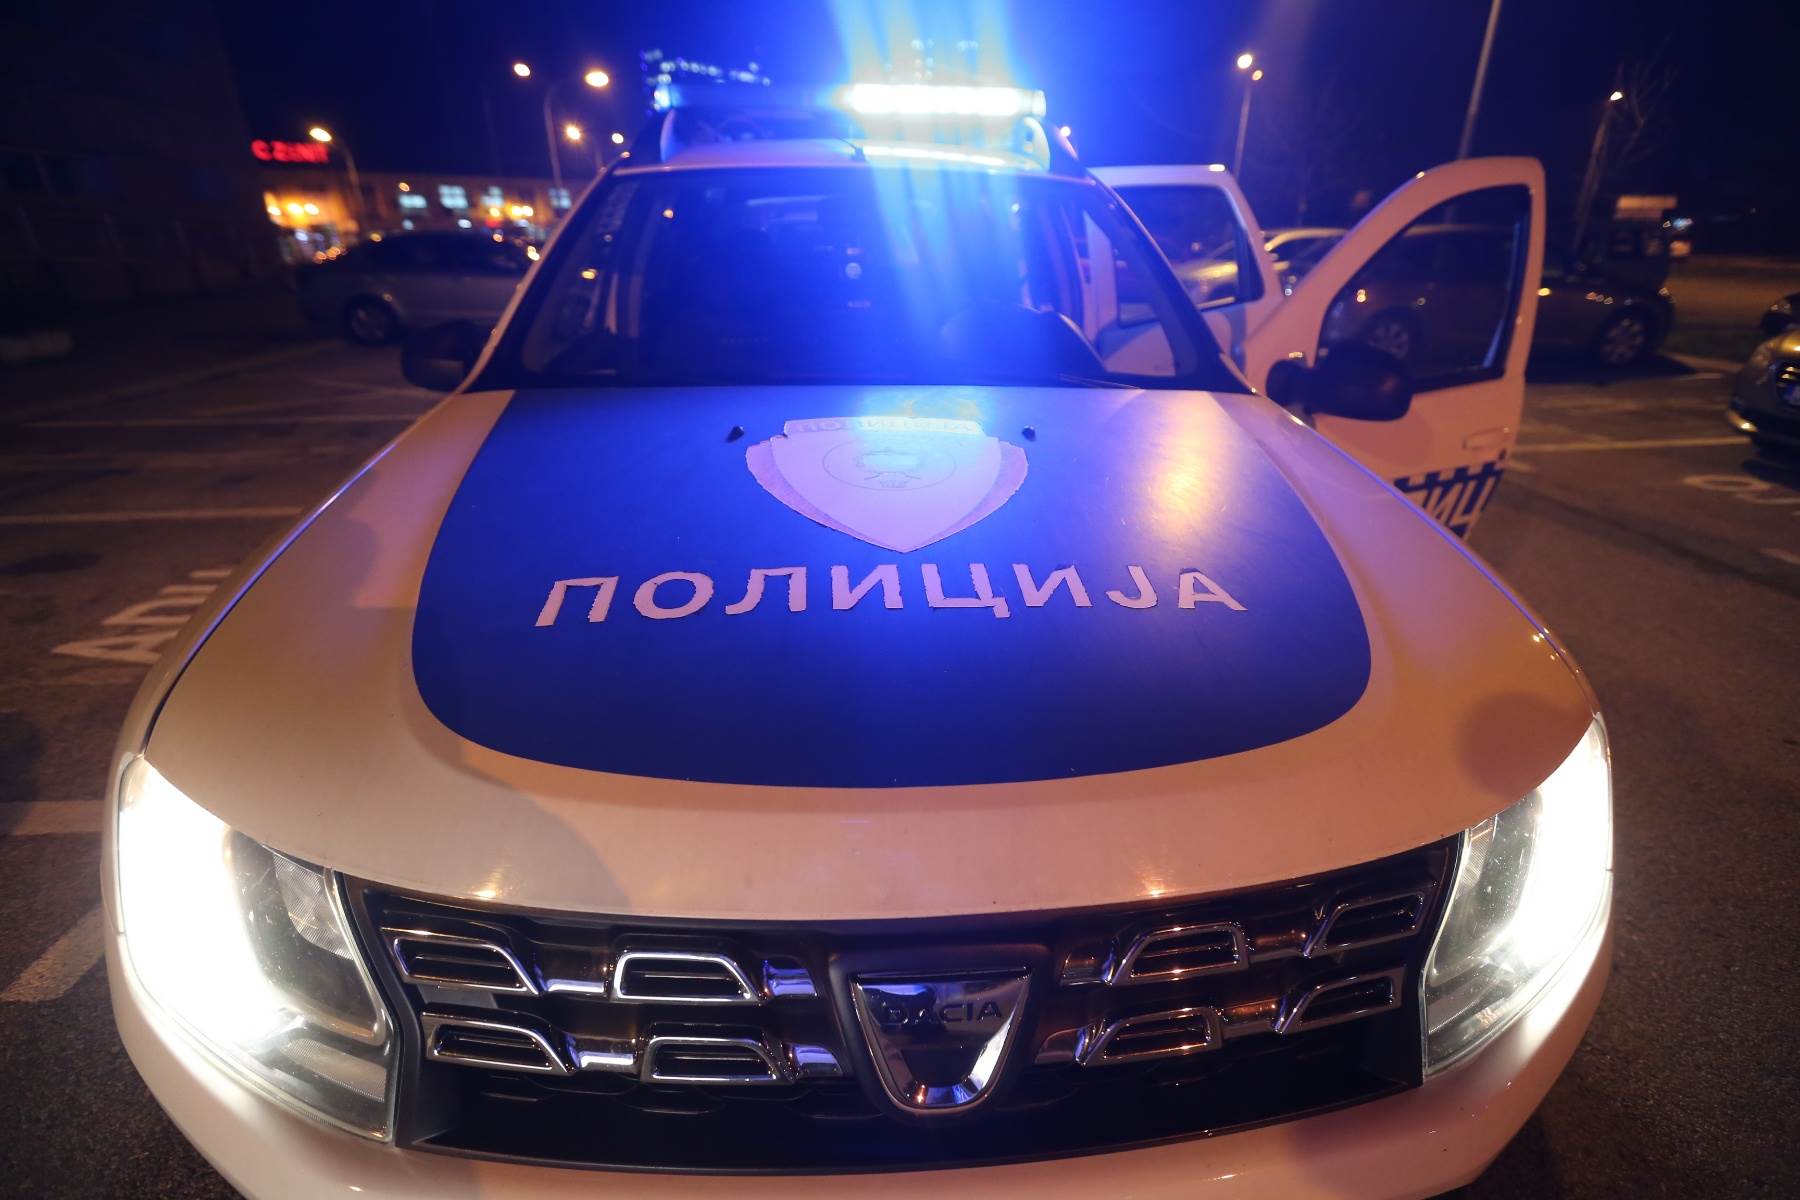  Banjalučanin optužen za nesreću u kojoj je poginuo konzul Slovenije u Banjaluci 